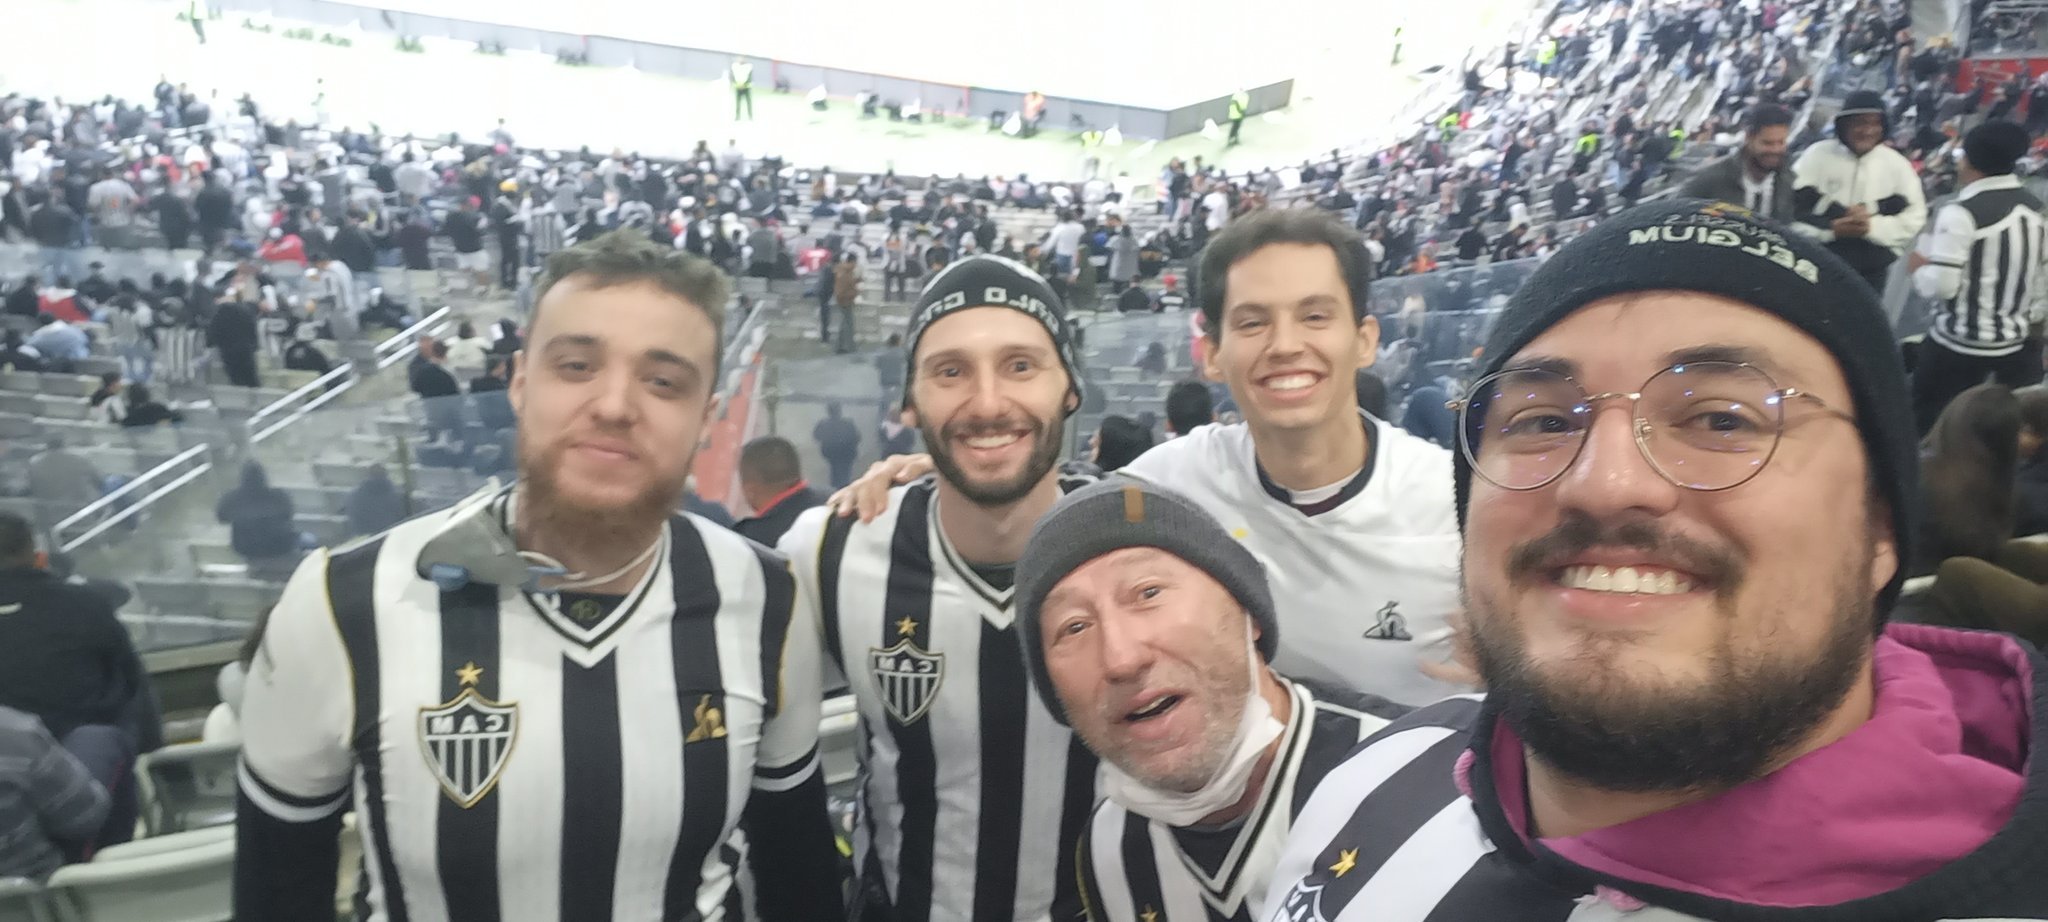 Guilherme, Acácio, Rafael, Felipe y Daniel disfrutando su momento en el estadio Mineirao ¡Dios los proteja!